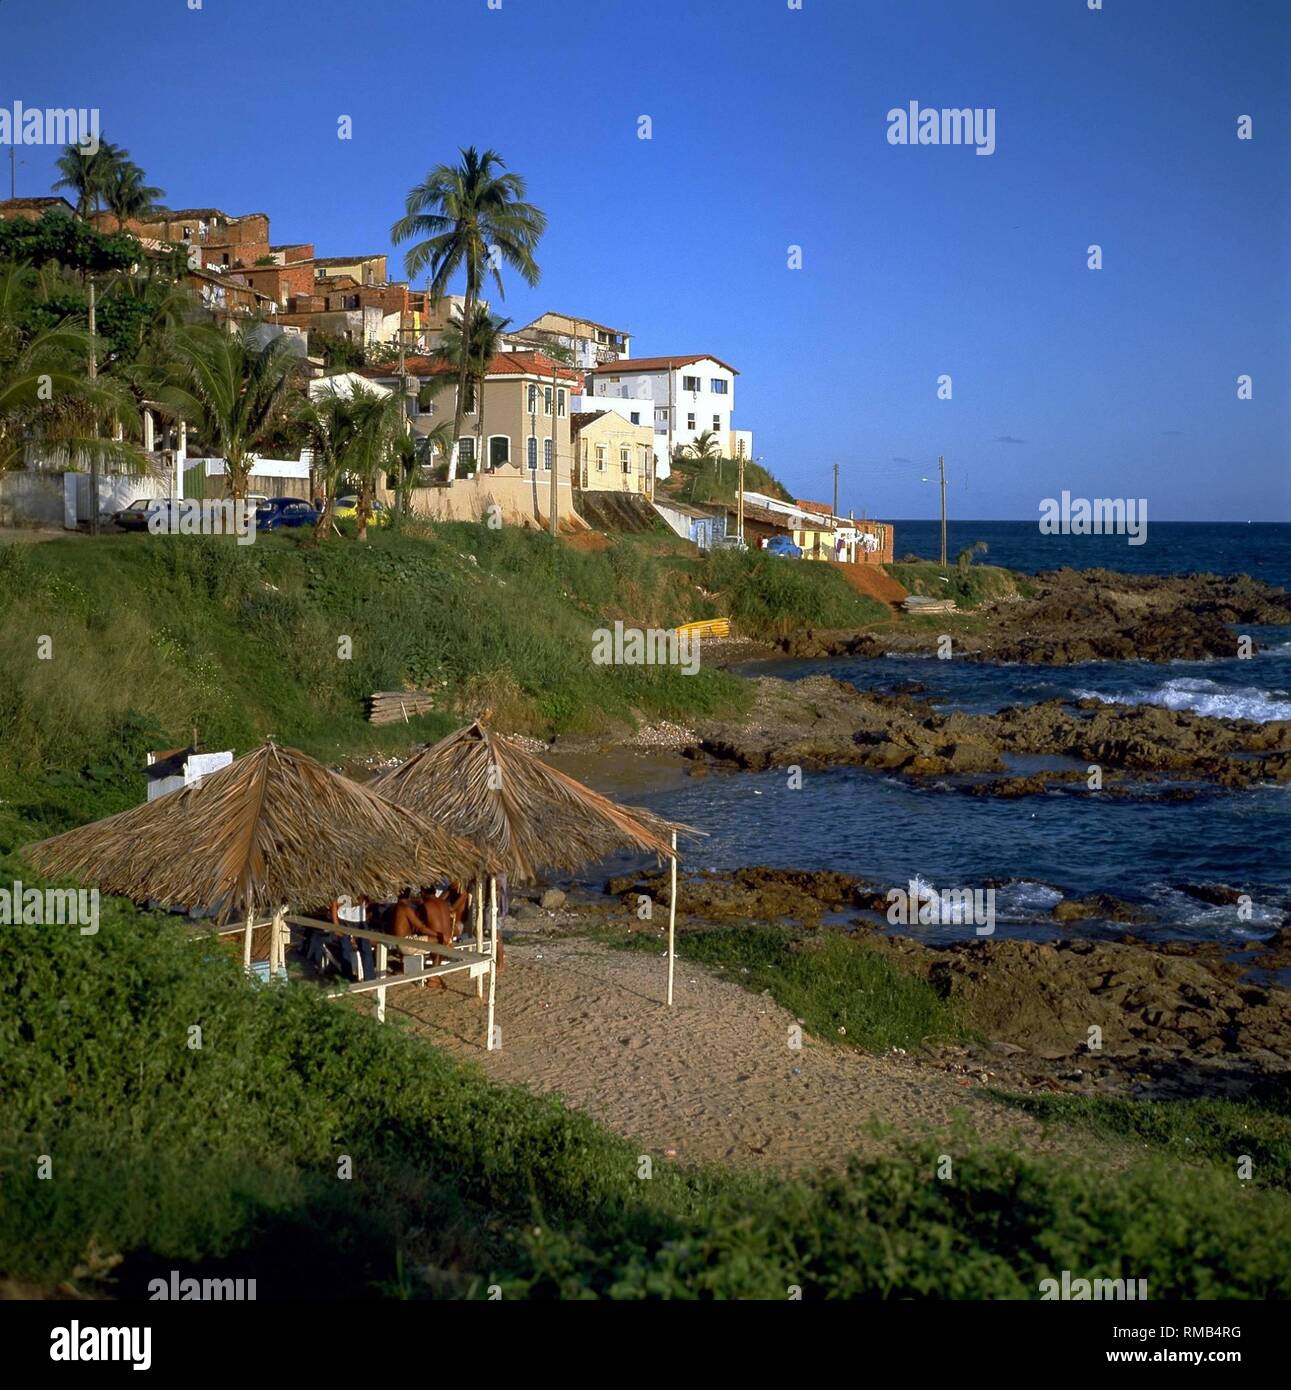 The beach 'Santana' in Salvador. Stock Photo